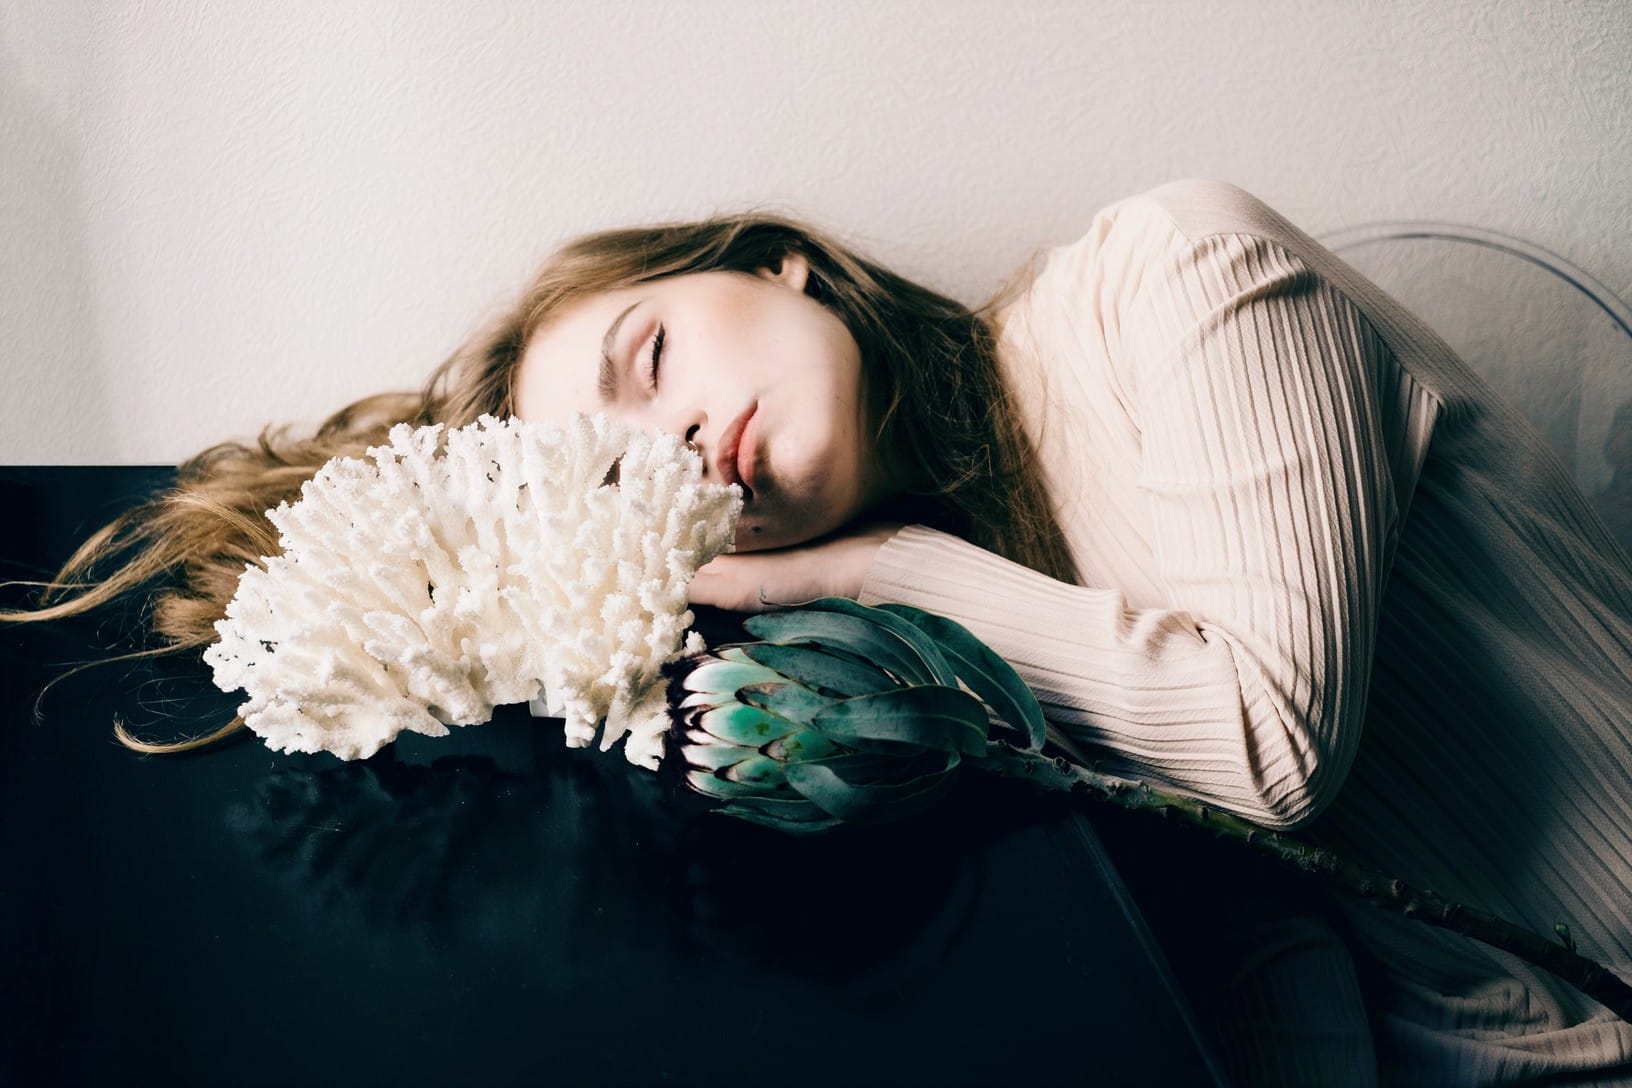 Photographie réalisée par Polina Washington illustrant une jeune femme endormie